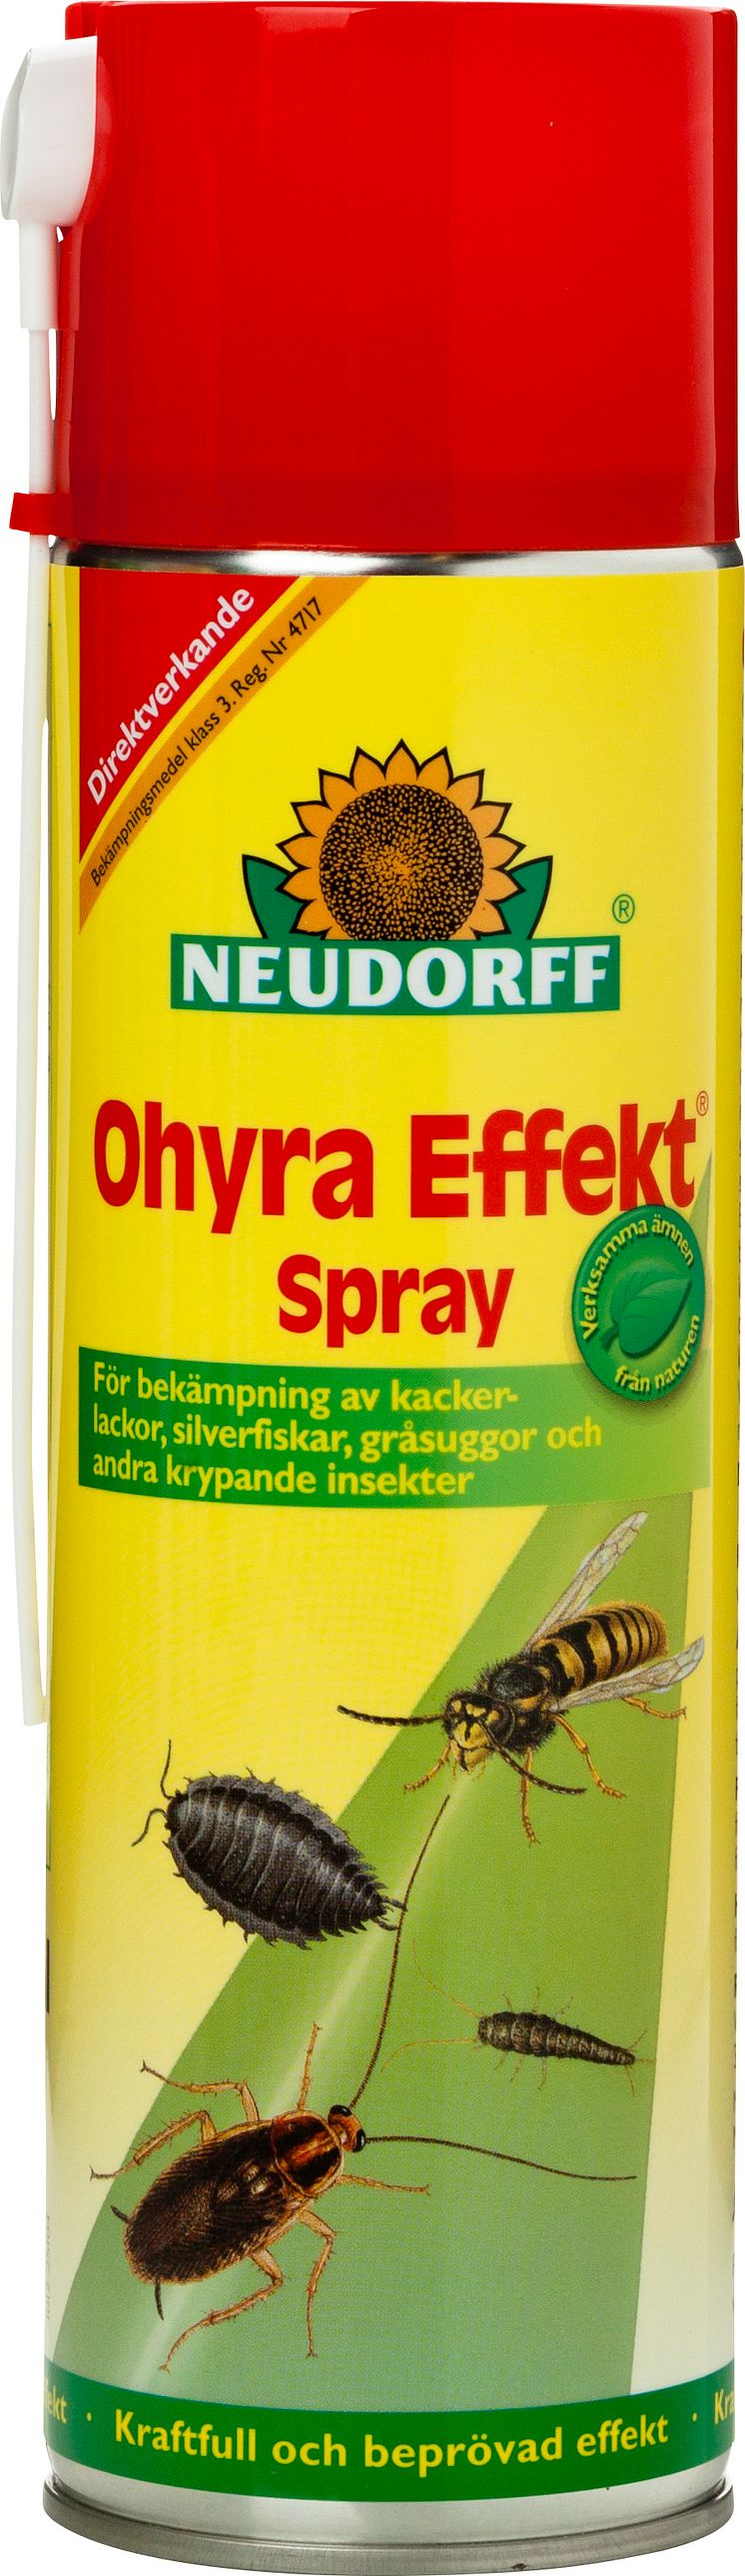 Ohyra Effekt - Neudorff